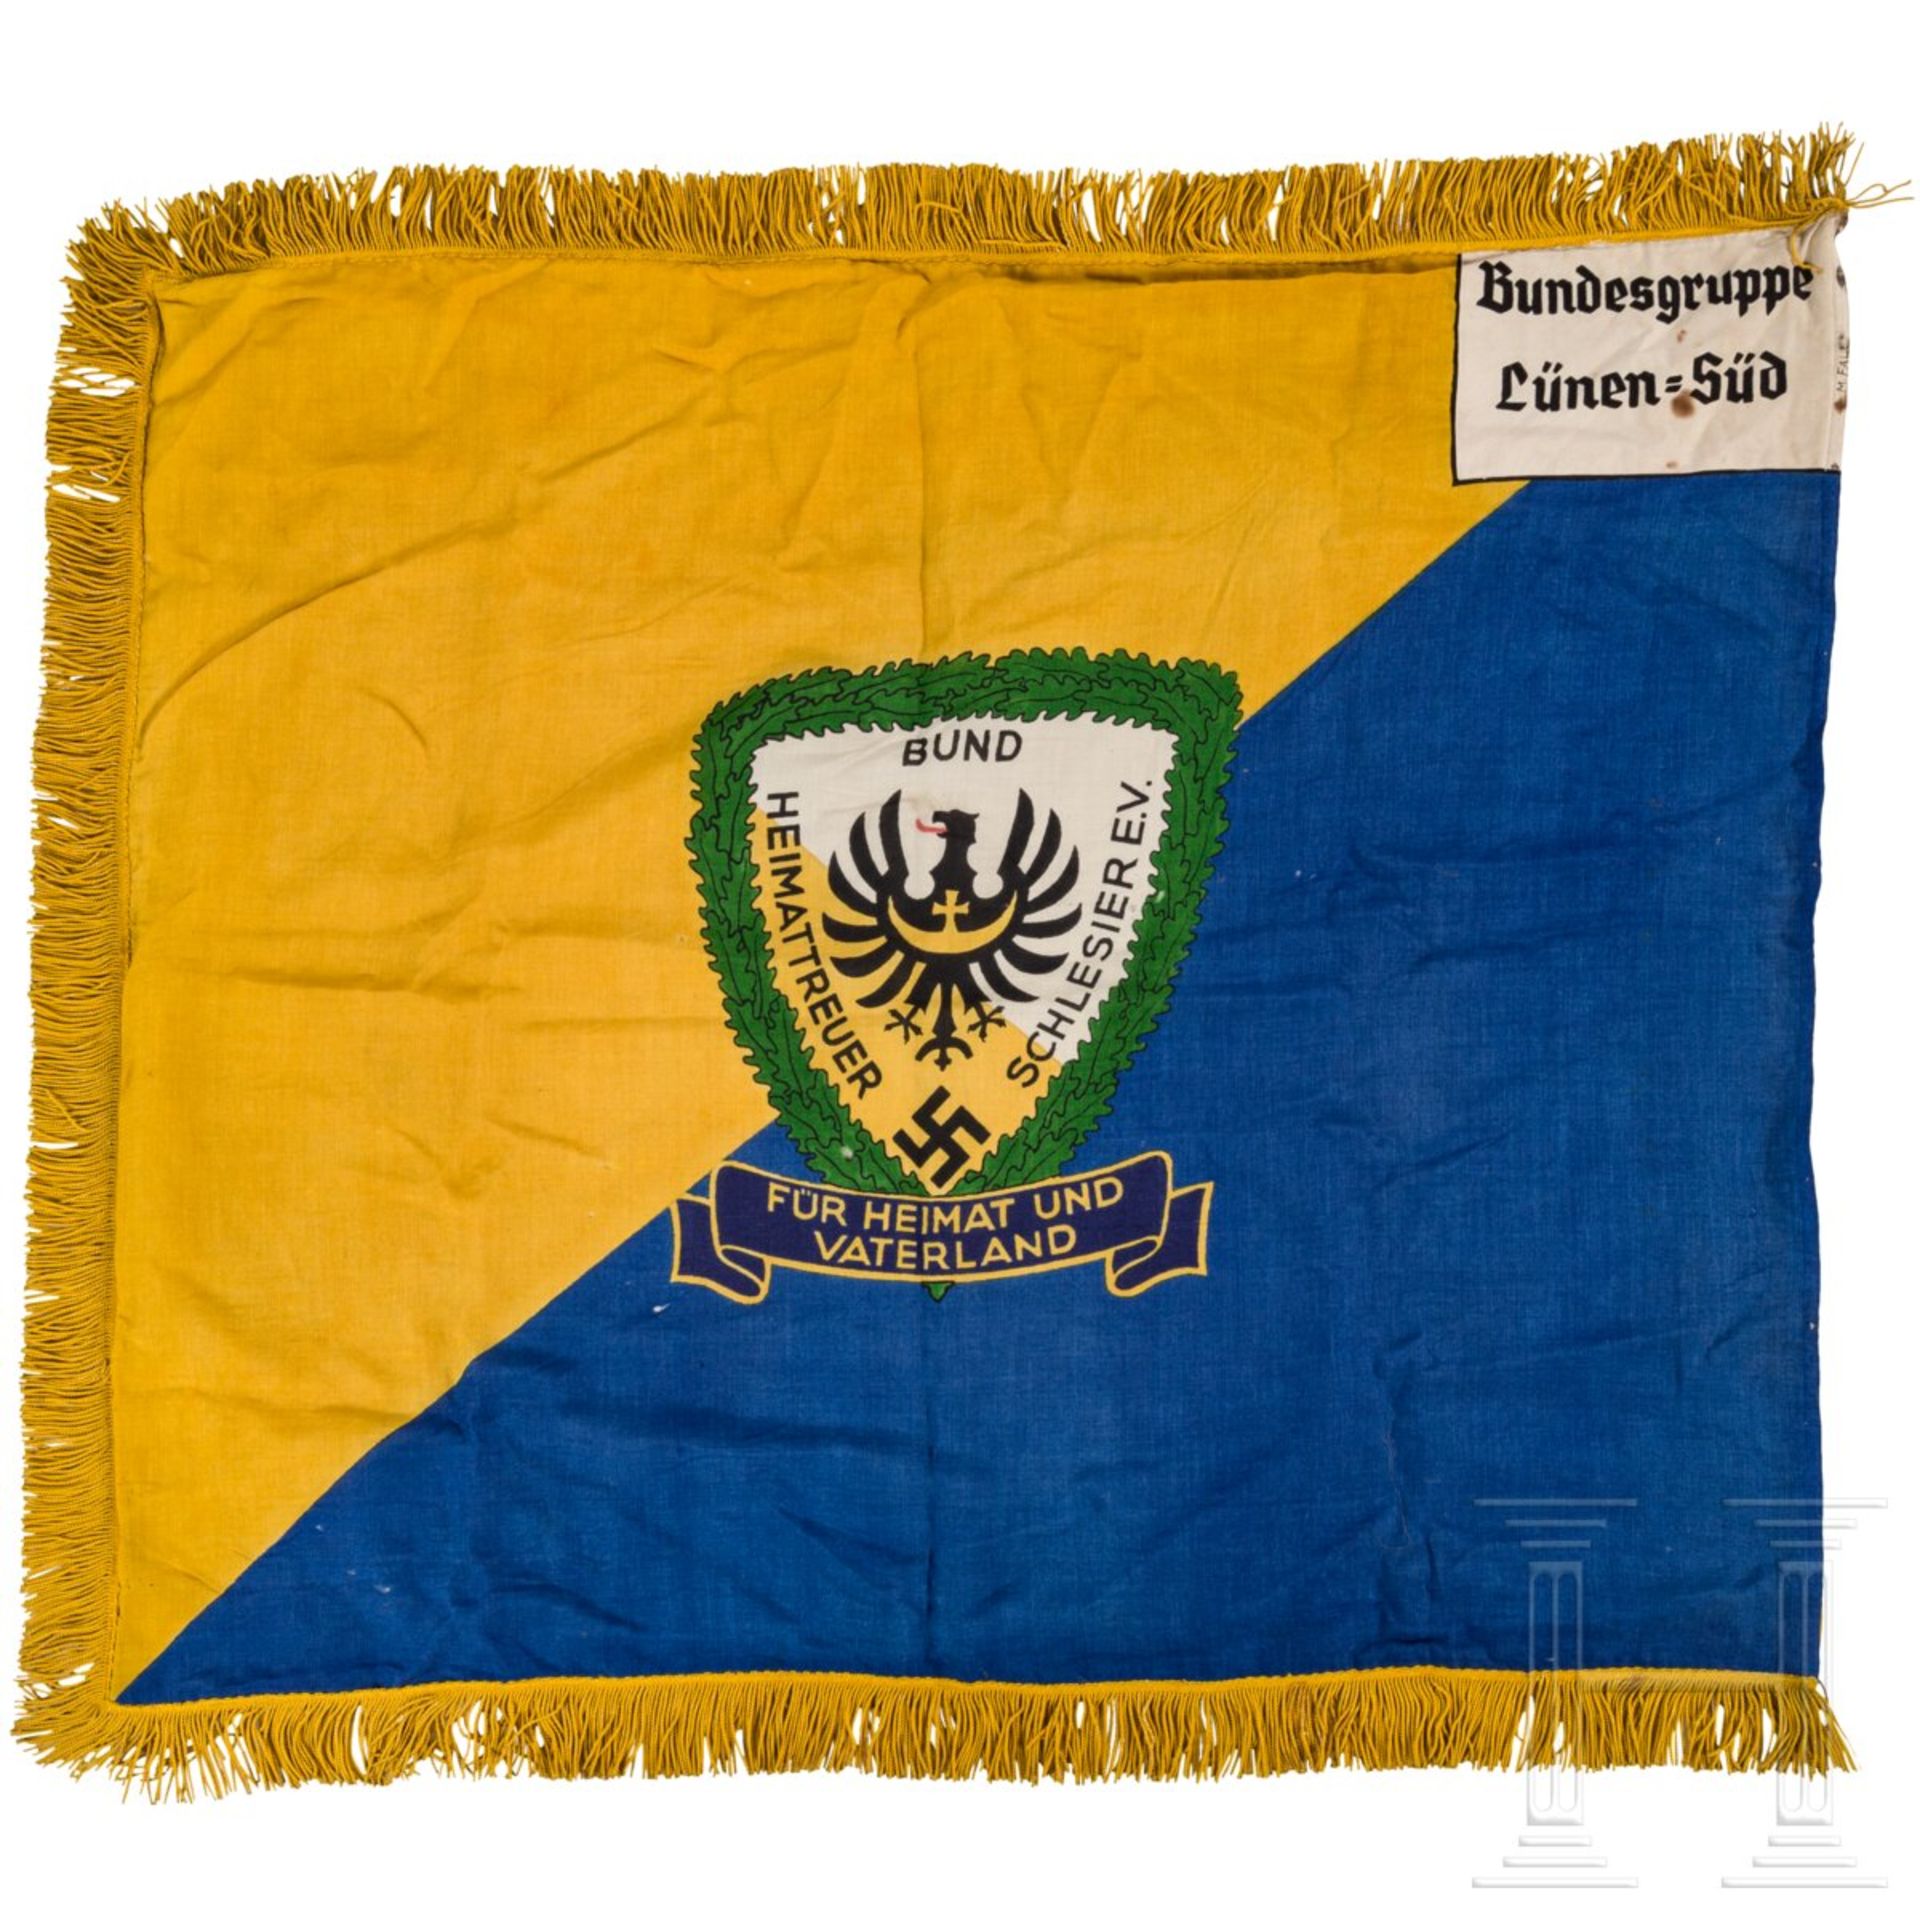 Fahne der Bundesgruppe Lünen-Süd des Bundes heimattreuer Schlesier - Image 2 of 3